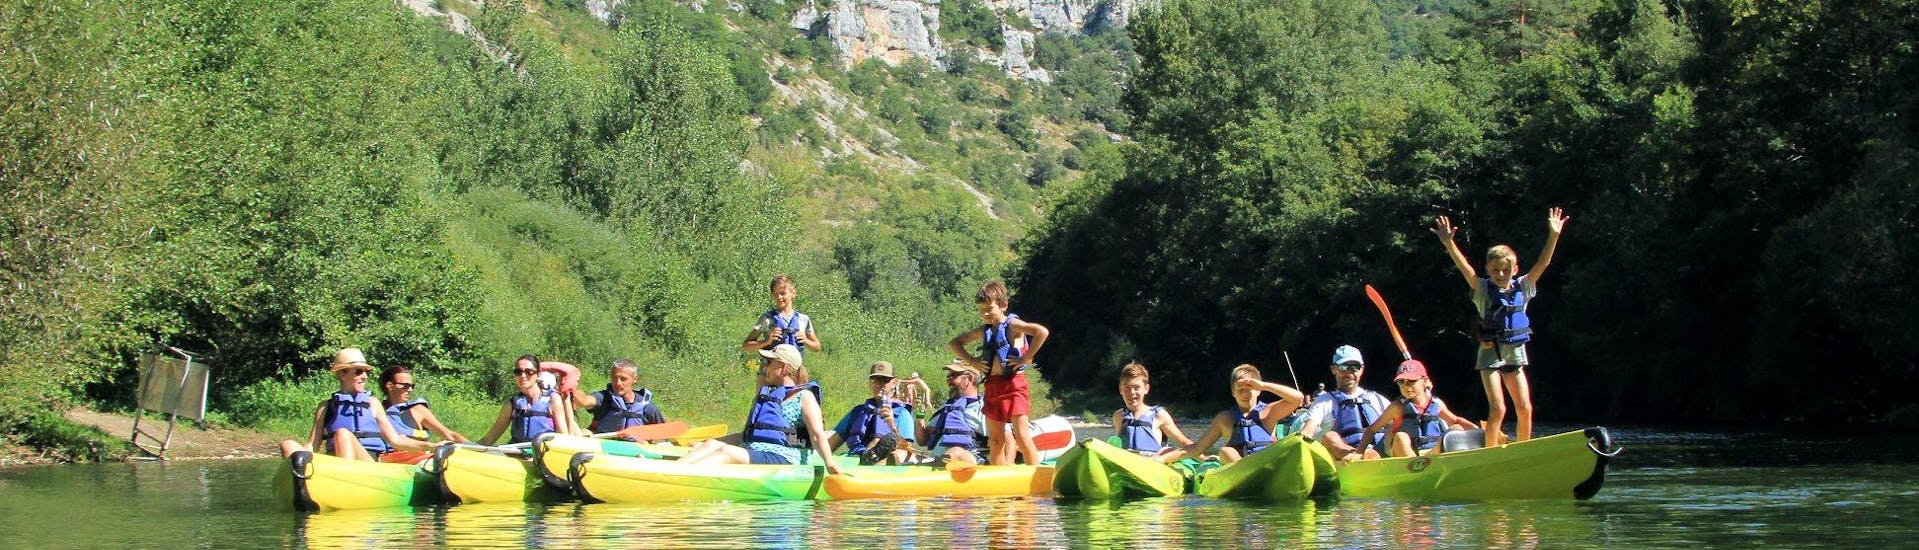 Kayak y piragua fácil en La Malène - Tarn River.